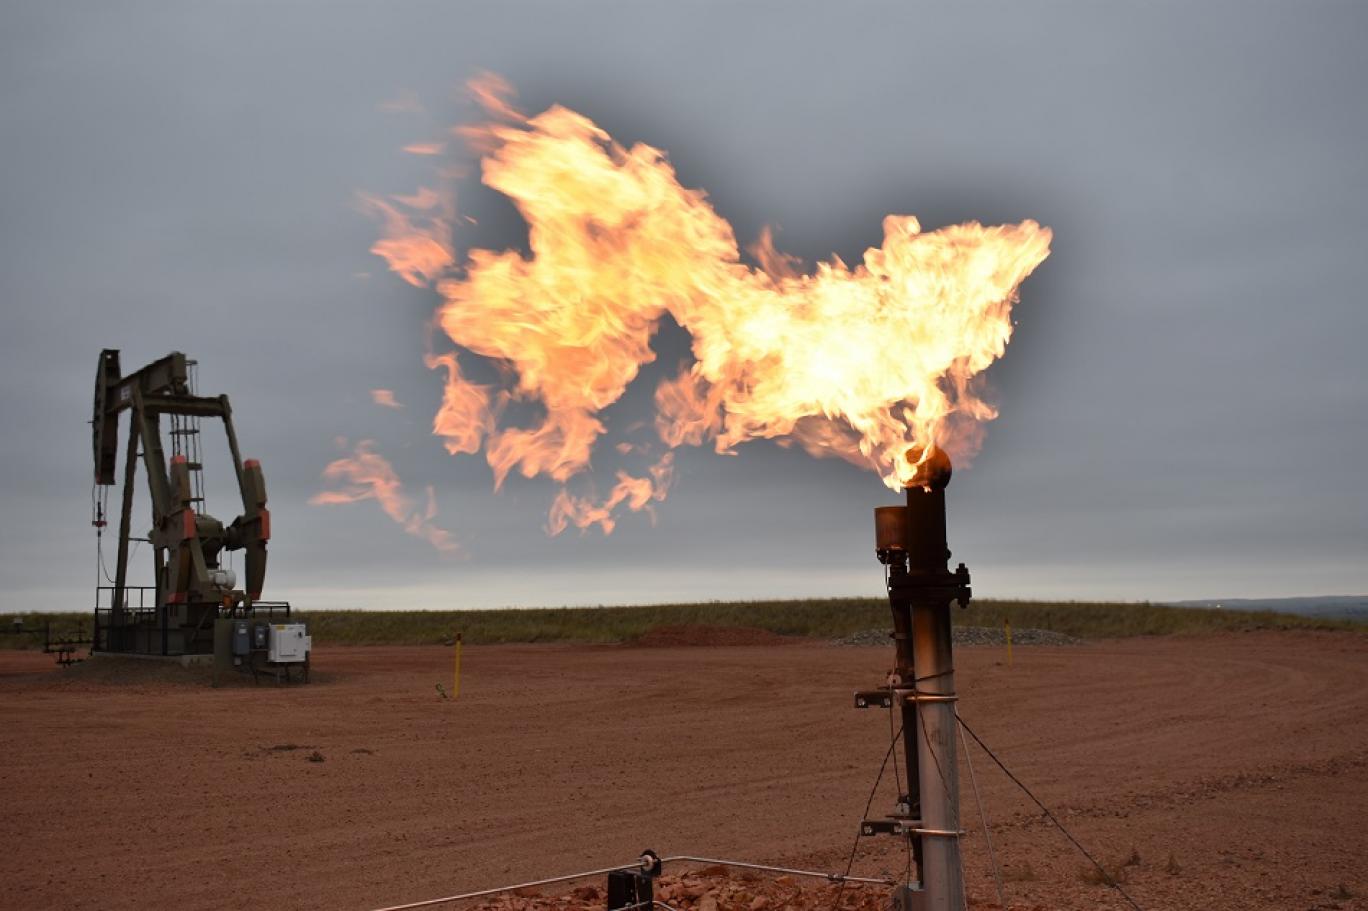  إفلاس عشرات الشركات الأروربية بسبب ارتفاع أسعار الغاز